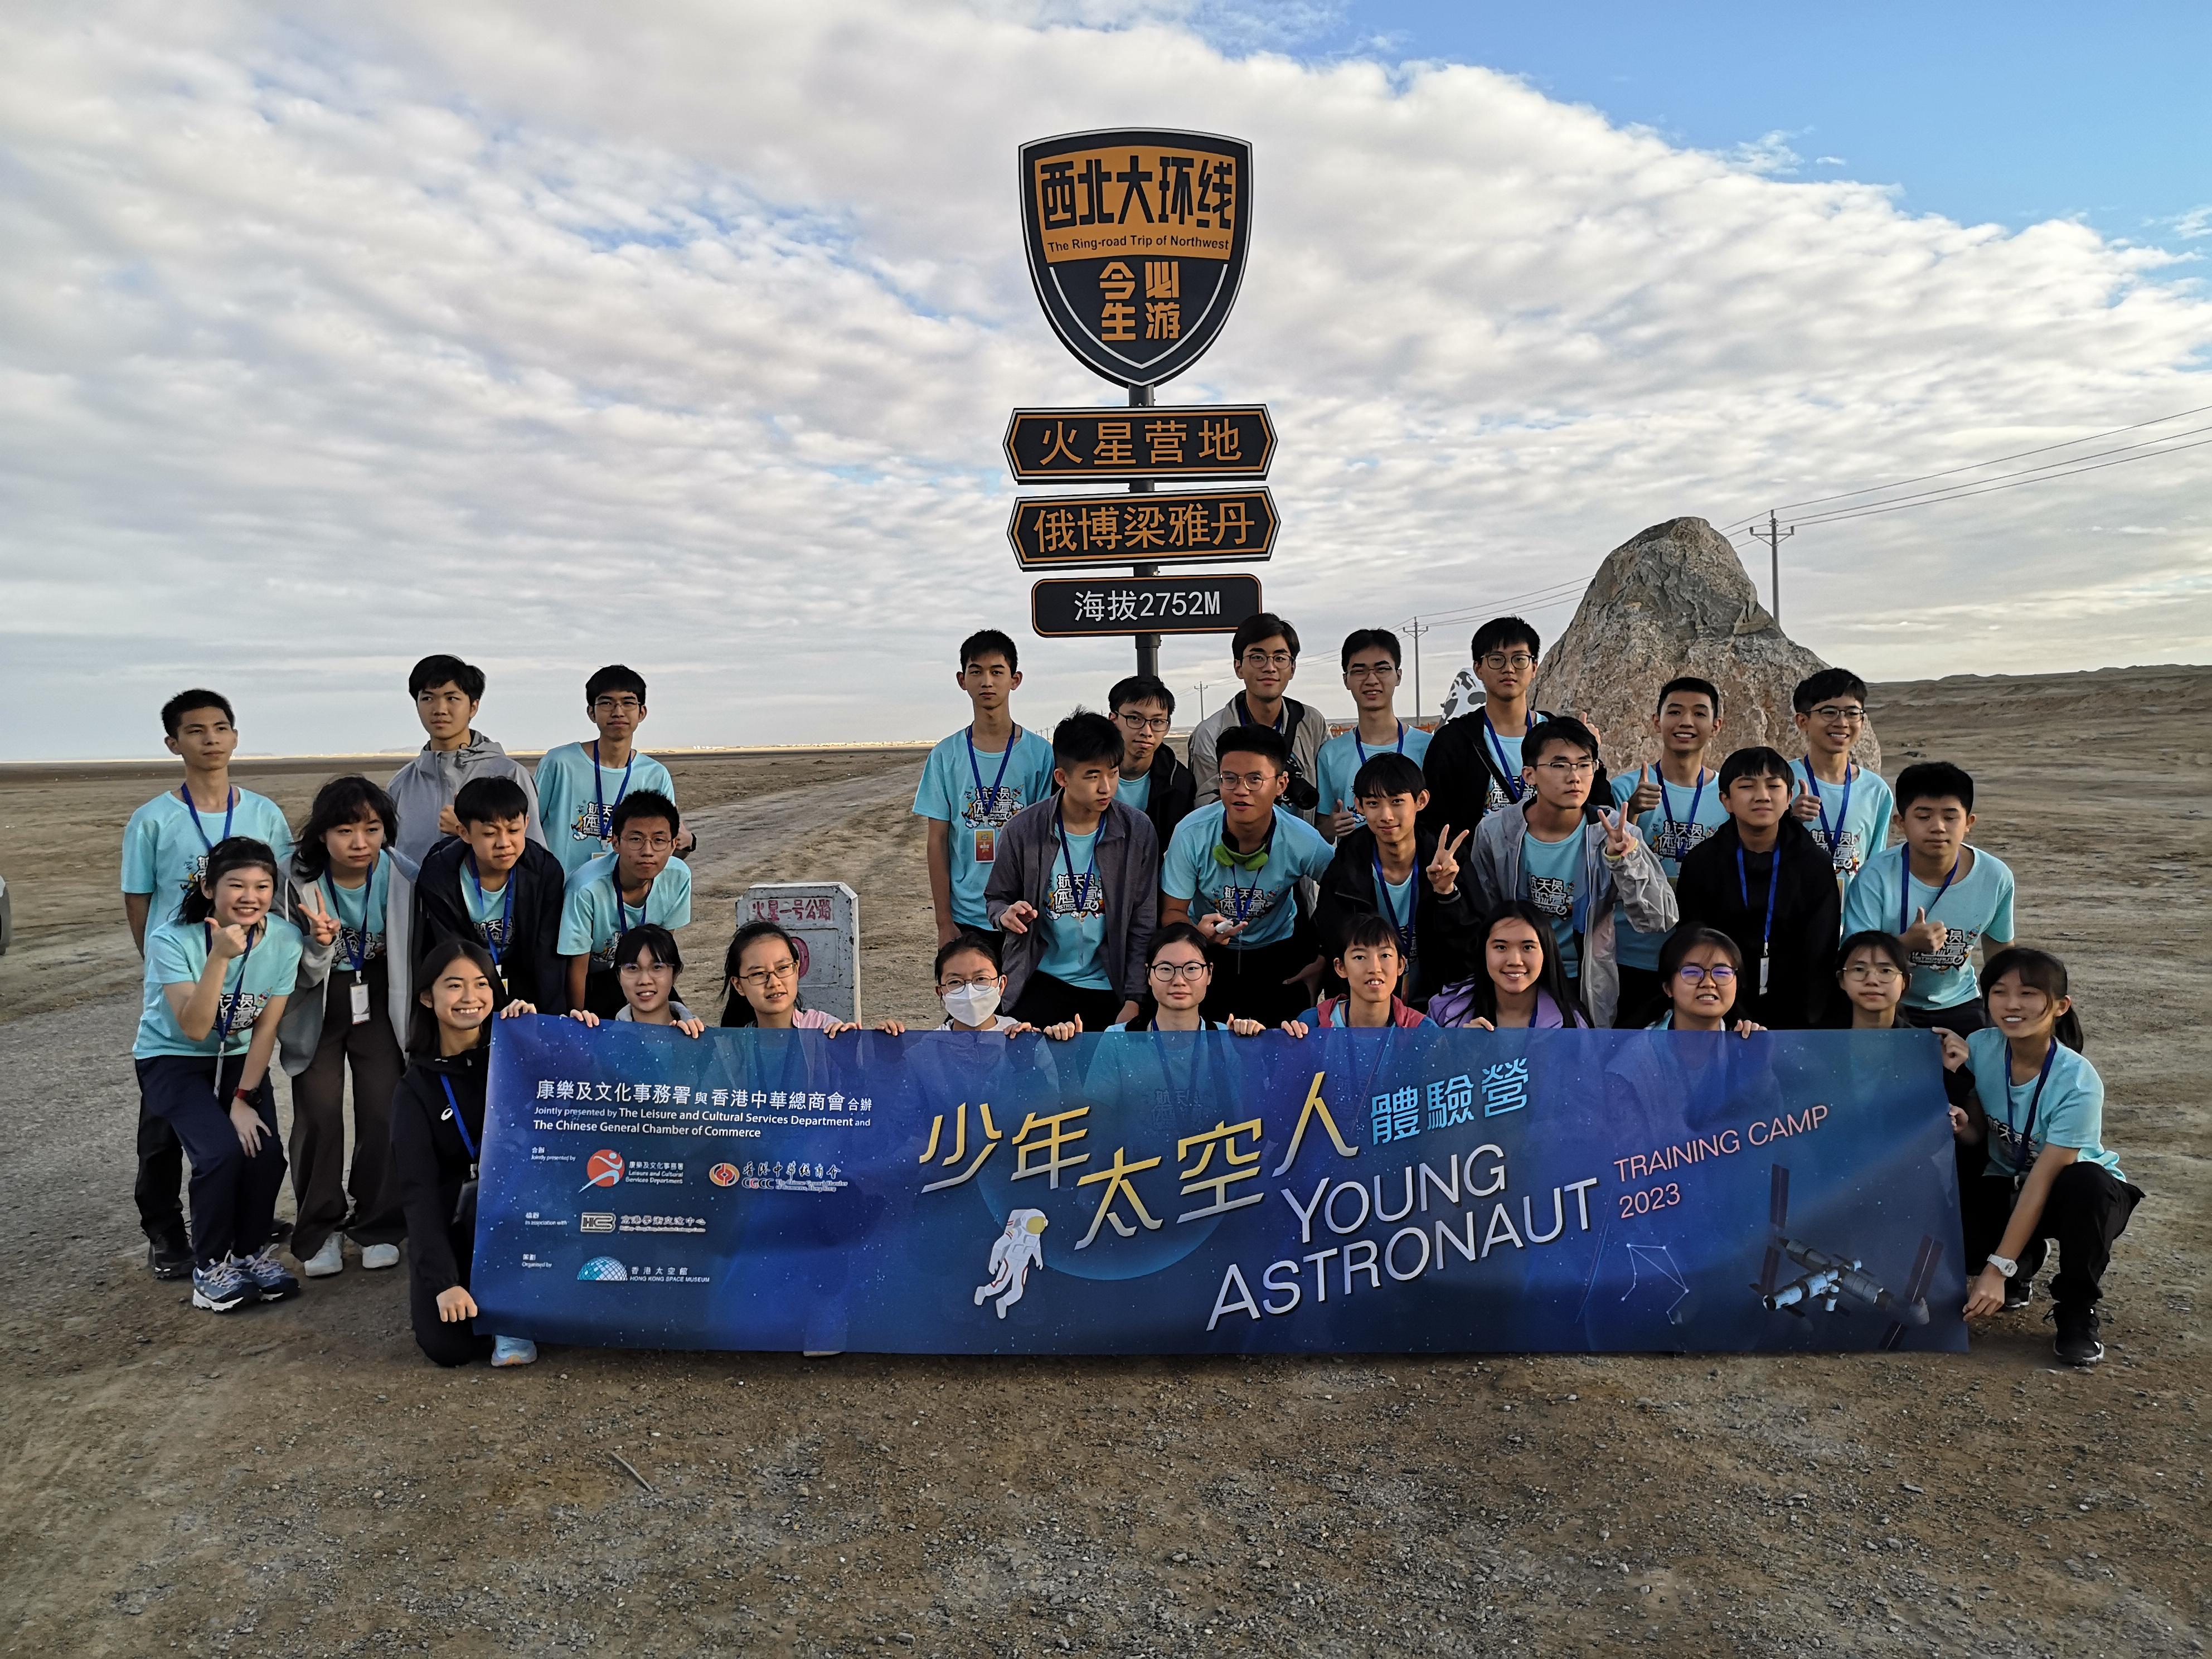 三十位中學生完成由香港太空館策劃的「少年太空人體驗營2023」。圖示學員前往青海冷湖火星營地途中合照。